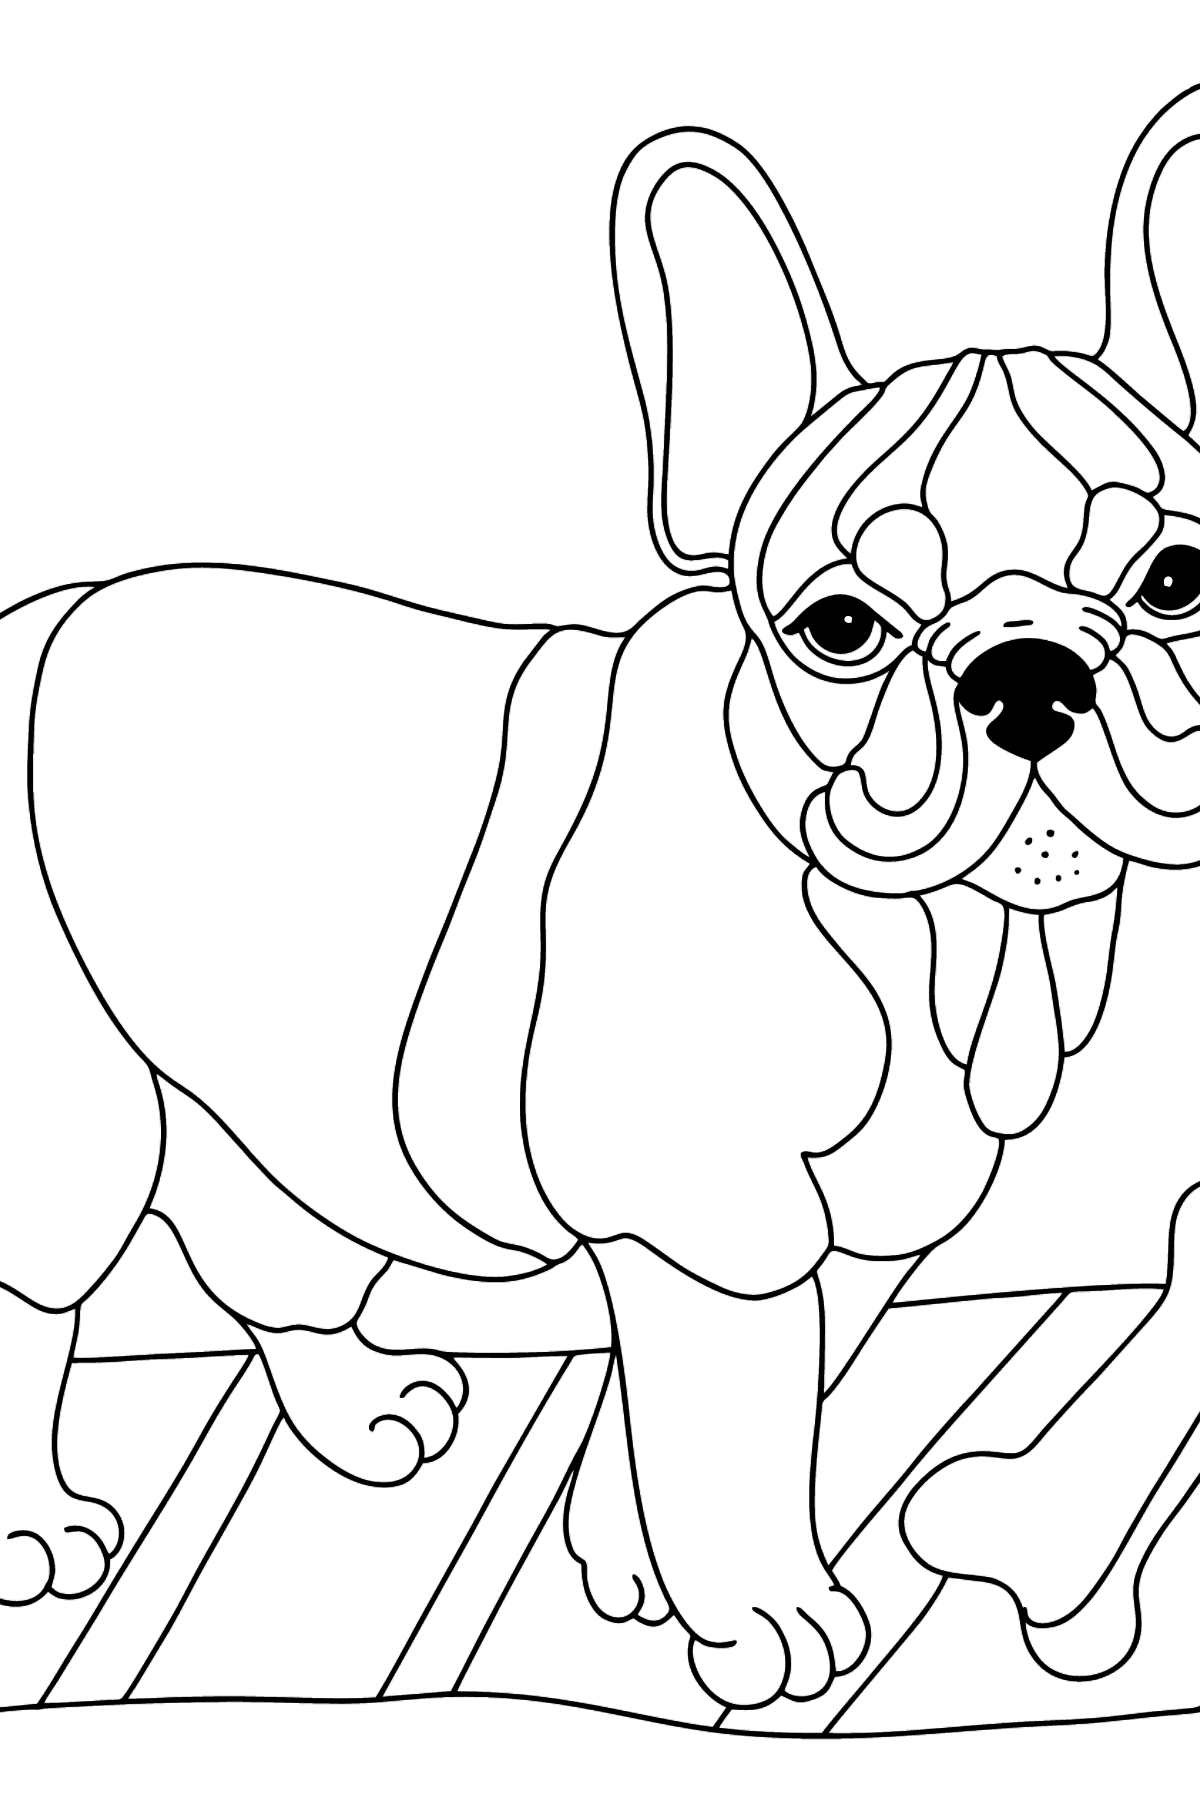 Målarbild fransk bulldog (svår) - Målarbilder För barn